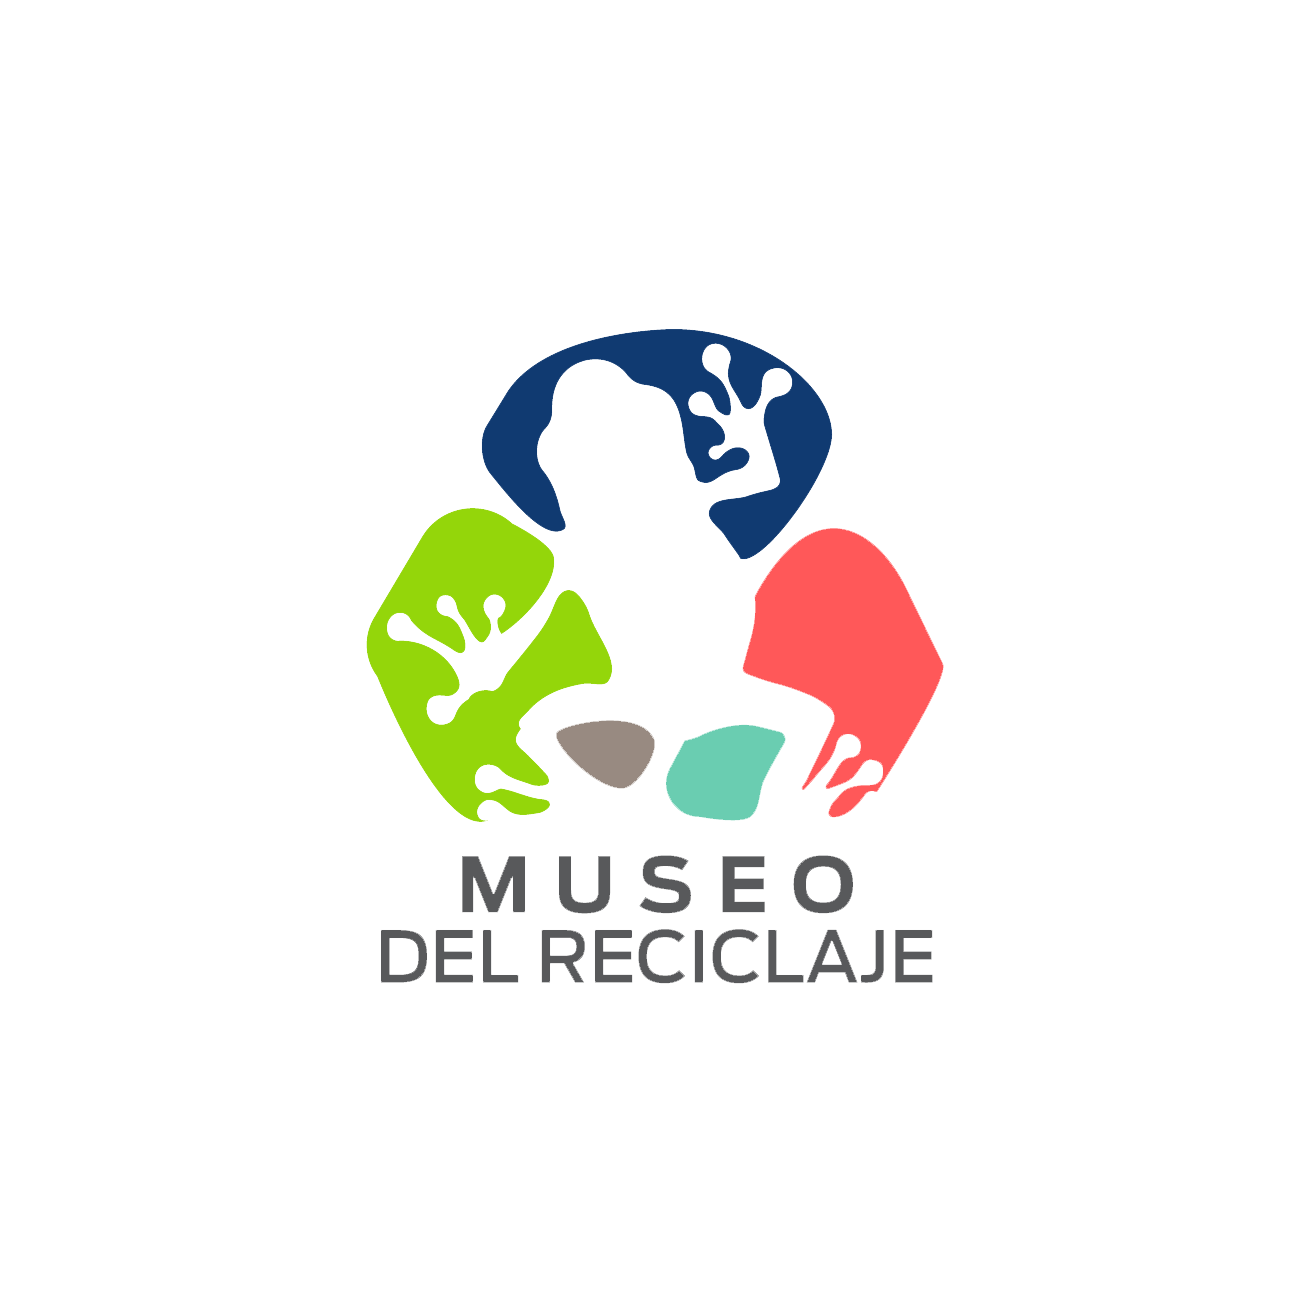 Museo de reciclaje logo